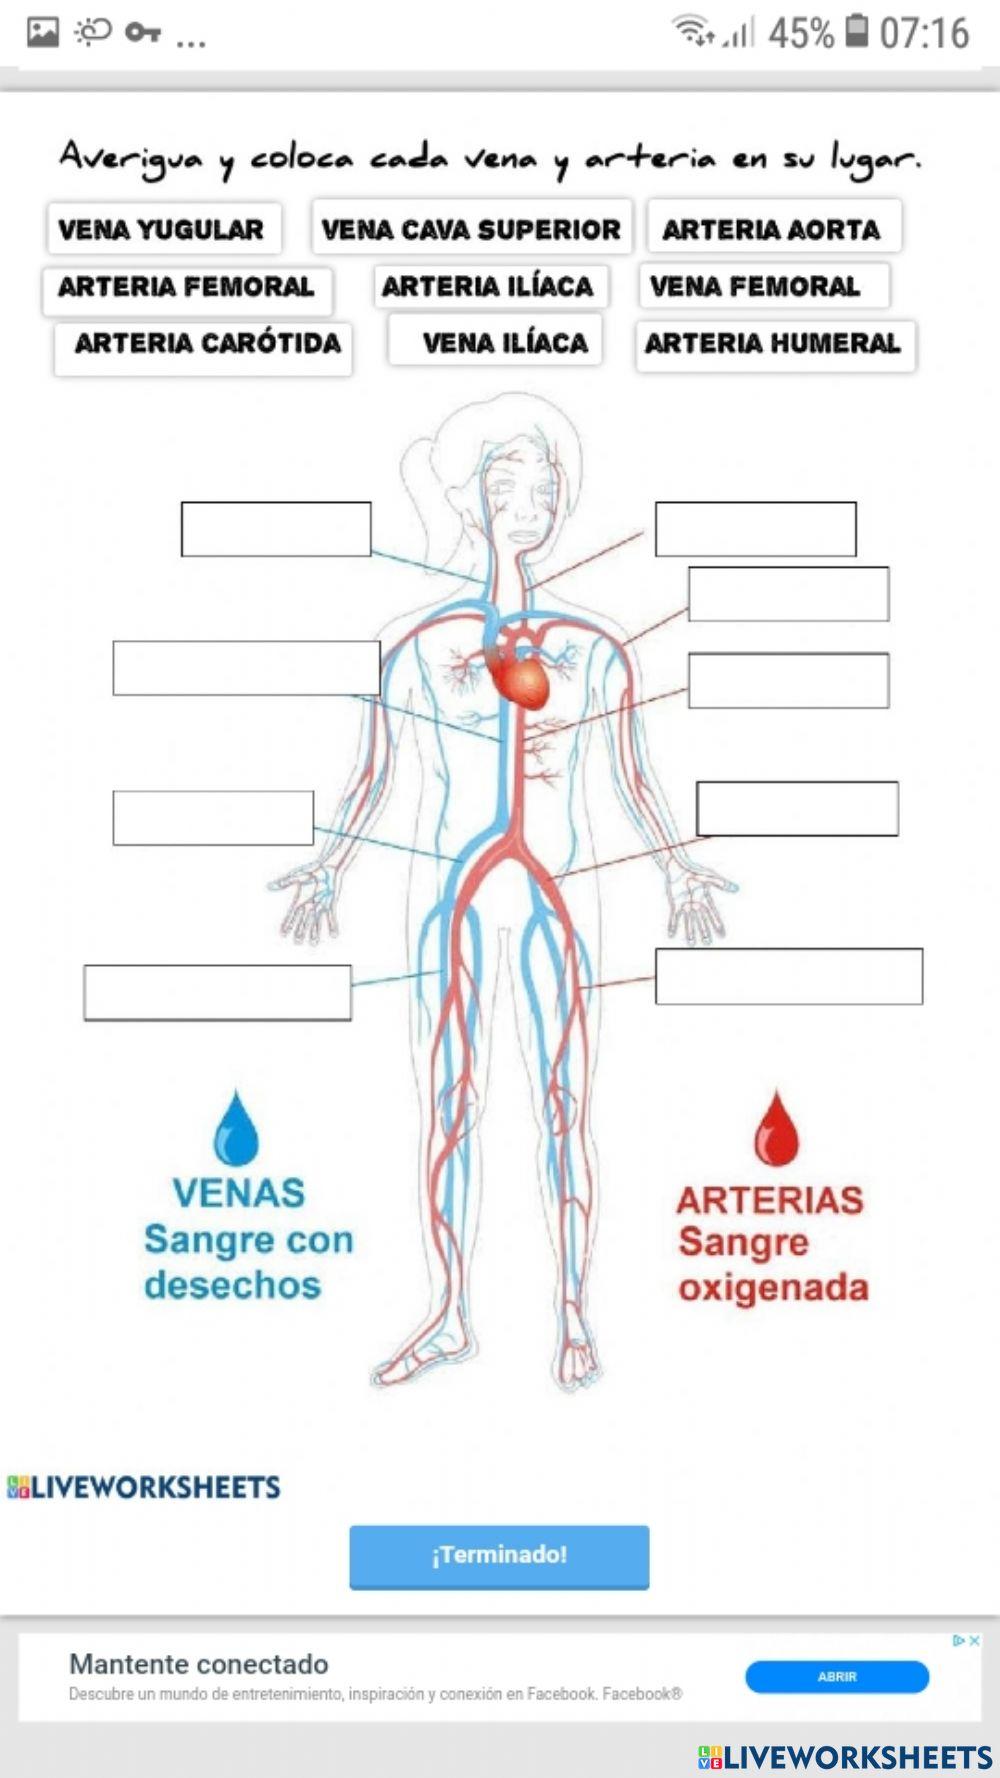 Sistema circulatorio